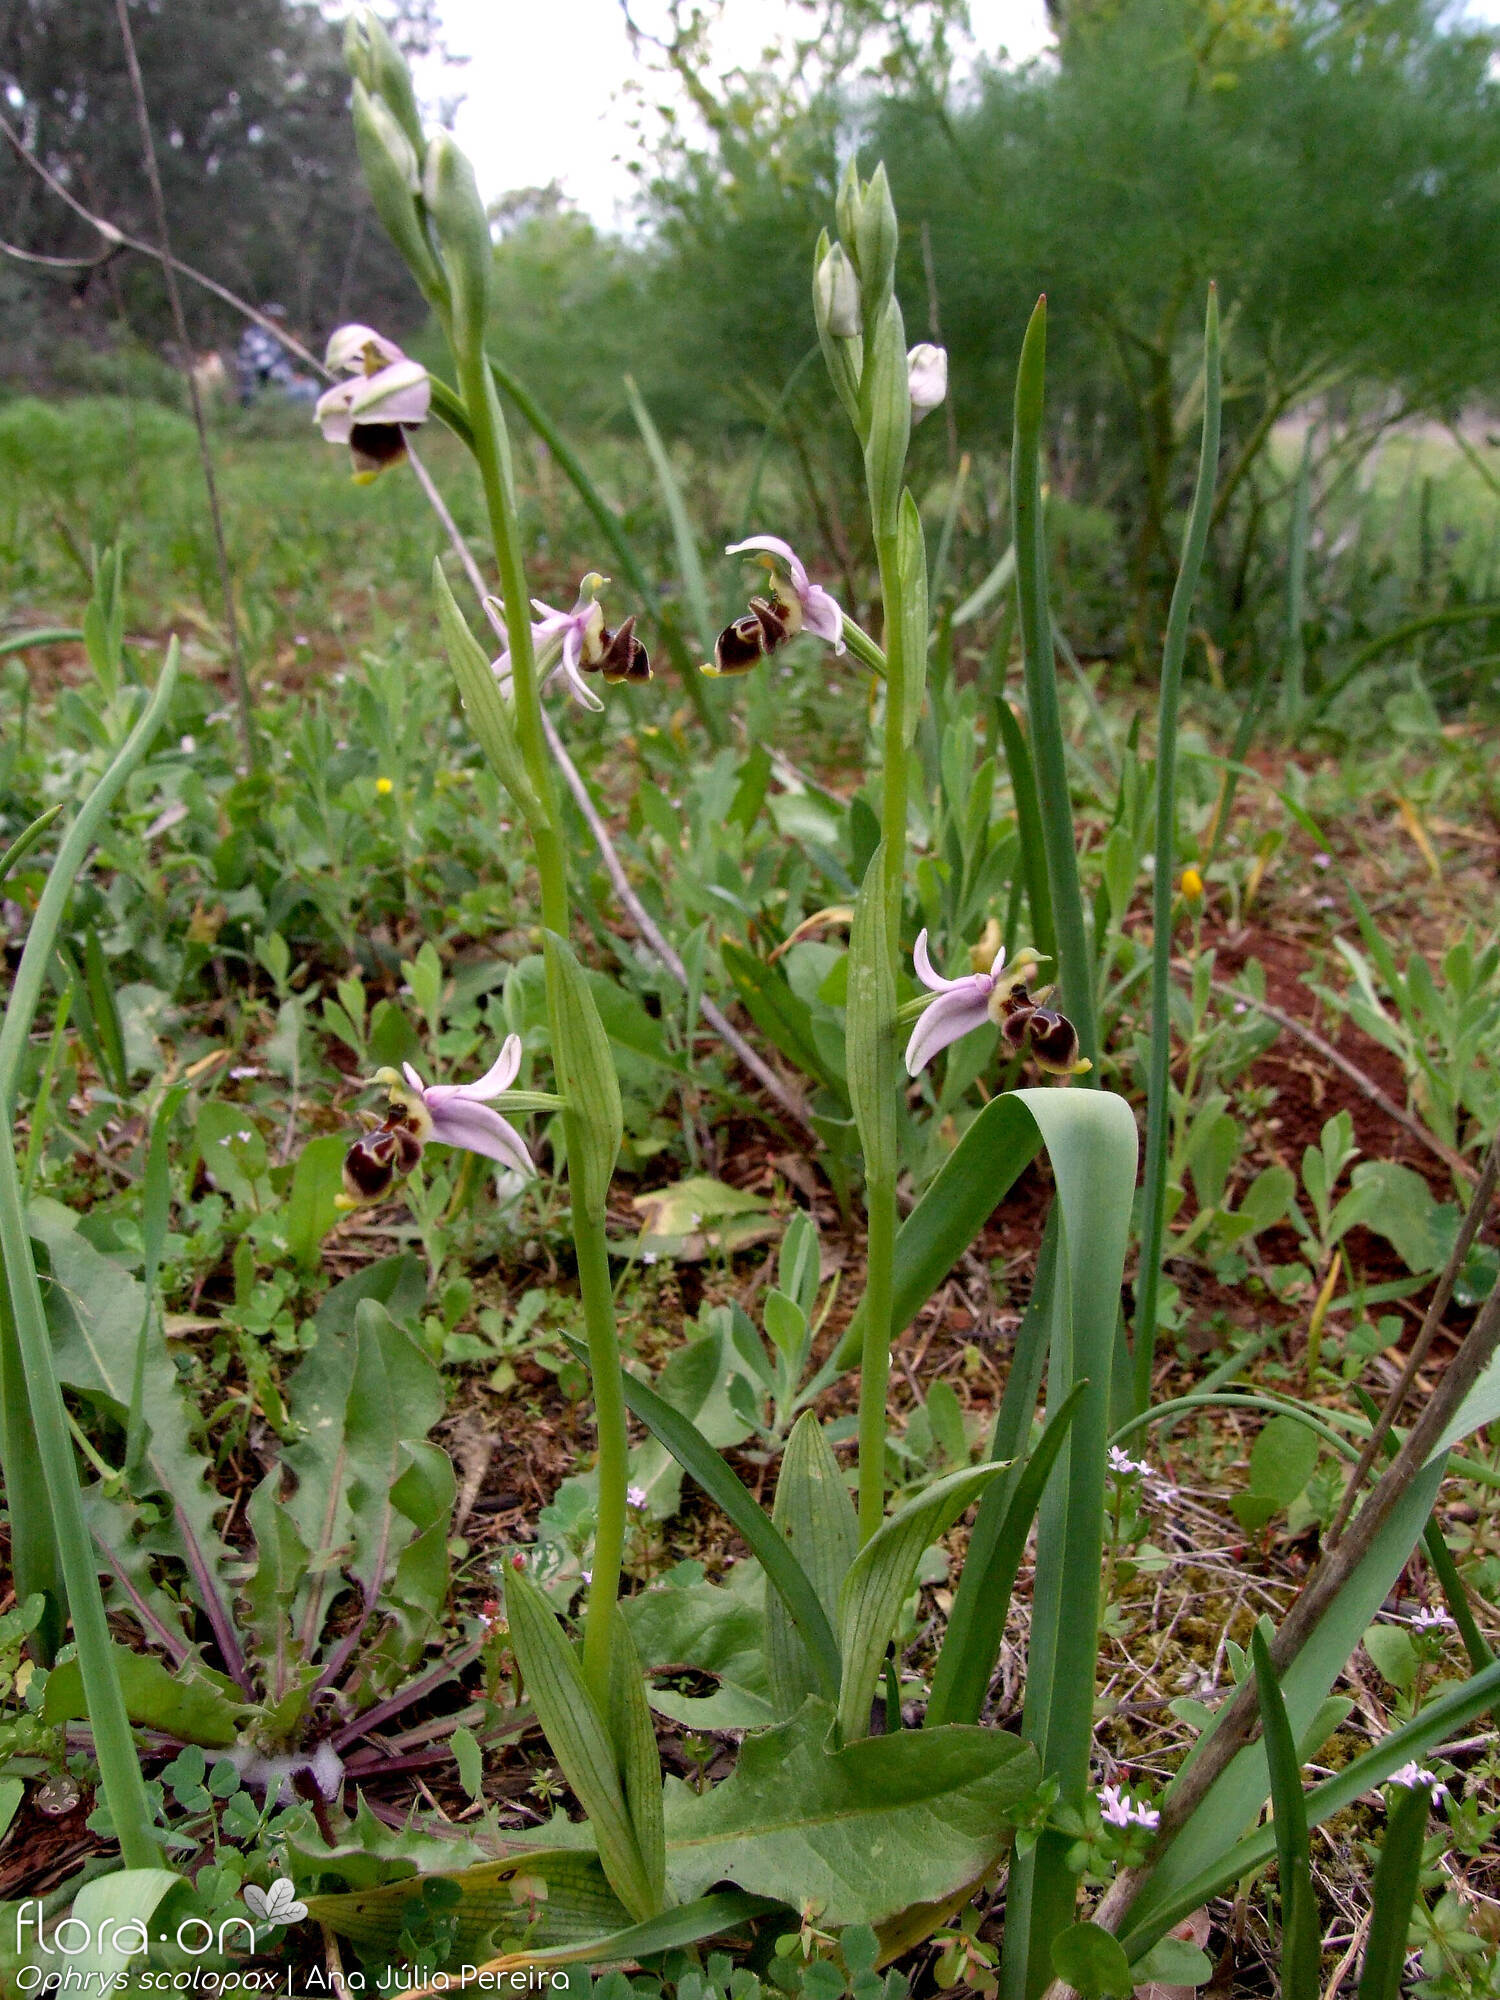 Ophrys scolopax - Hábito | Ana Júlia Pereira; CC BY-NC 4.0